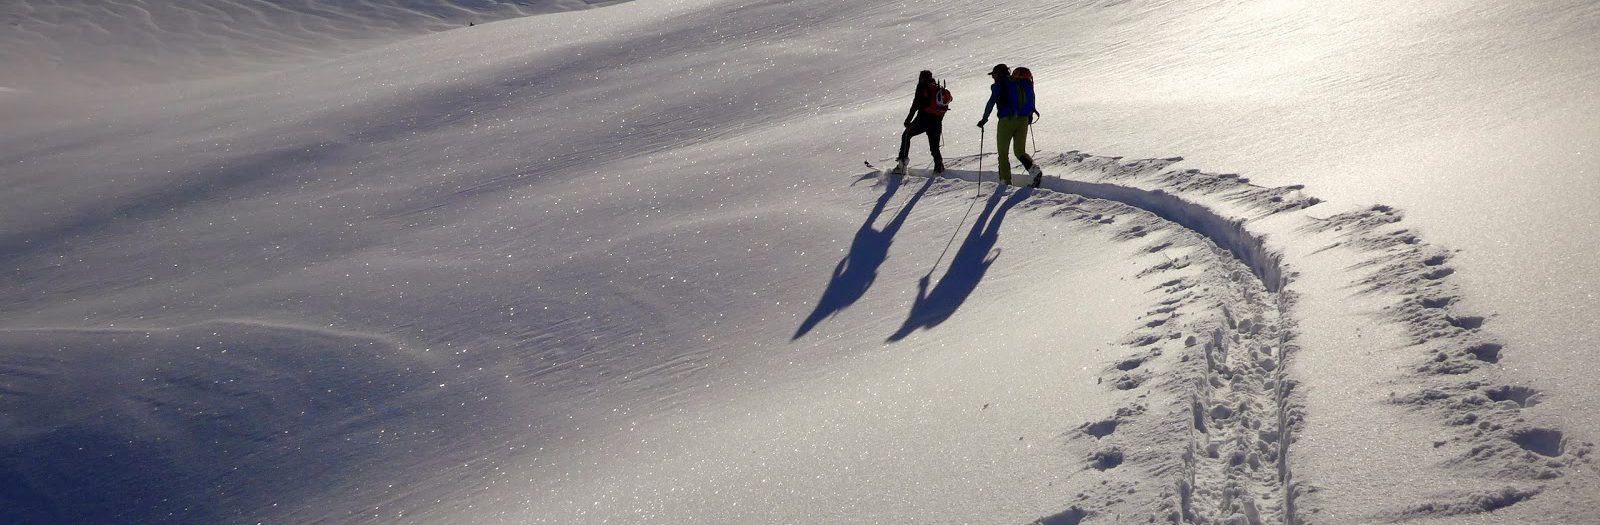 4 i 5 de Març. Esquí de Muntanya, Pic de Bataillance.